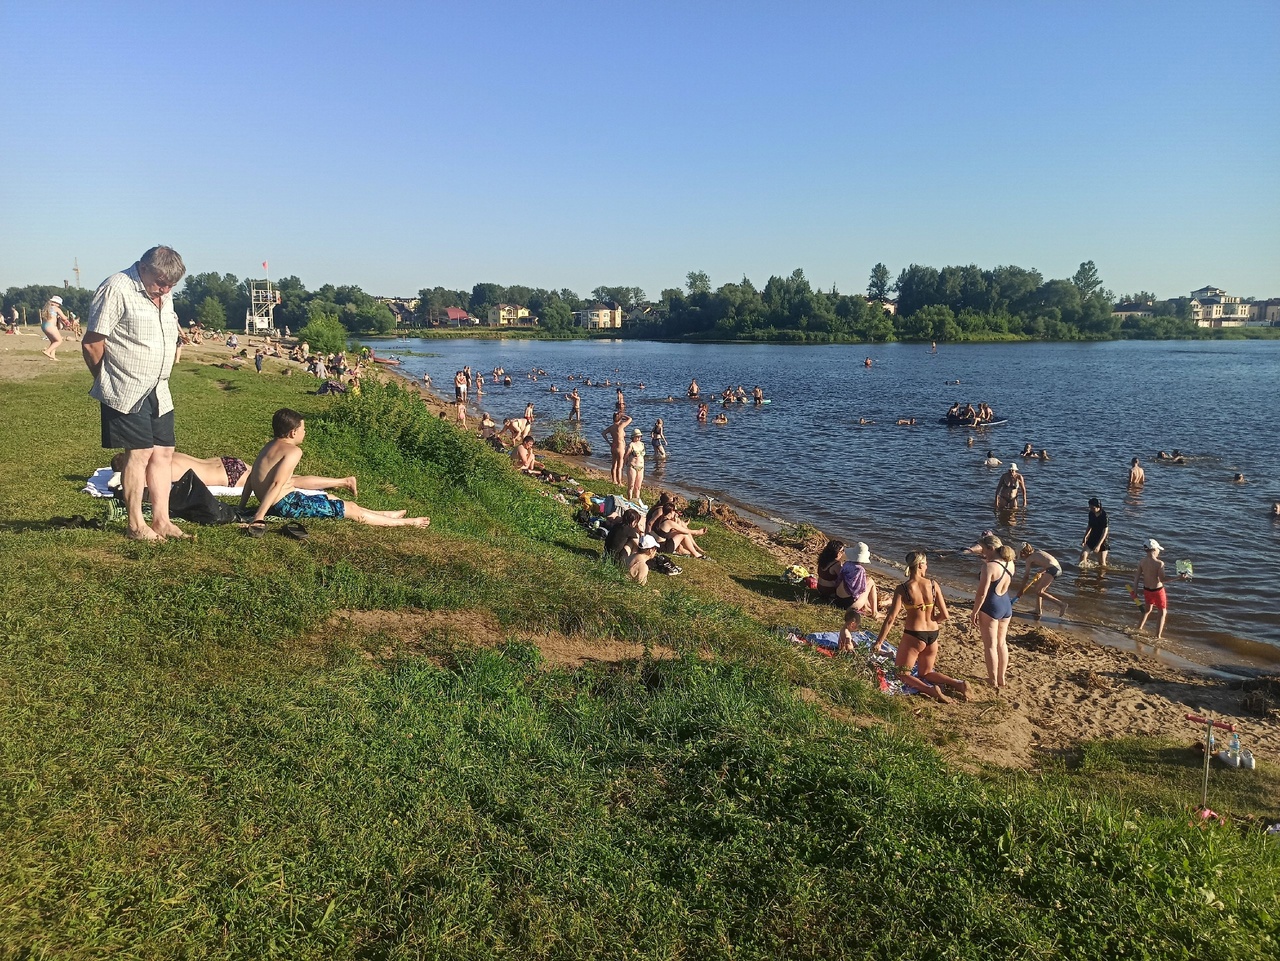 В Ярославле выбрали самый удобный пляж